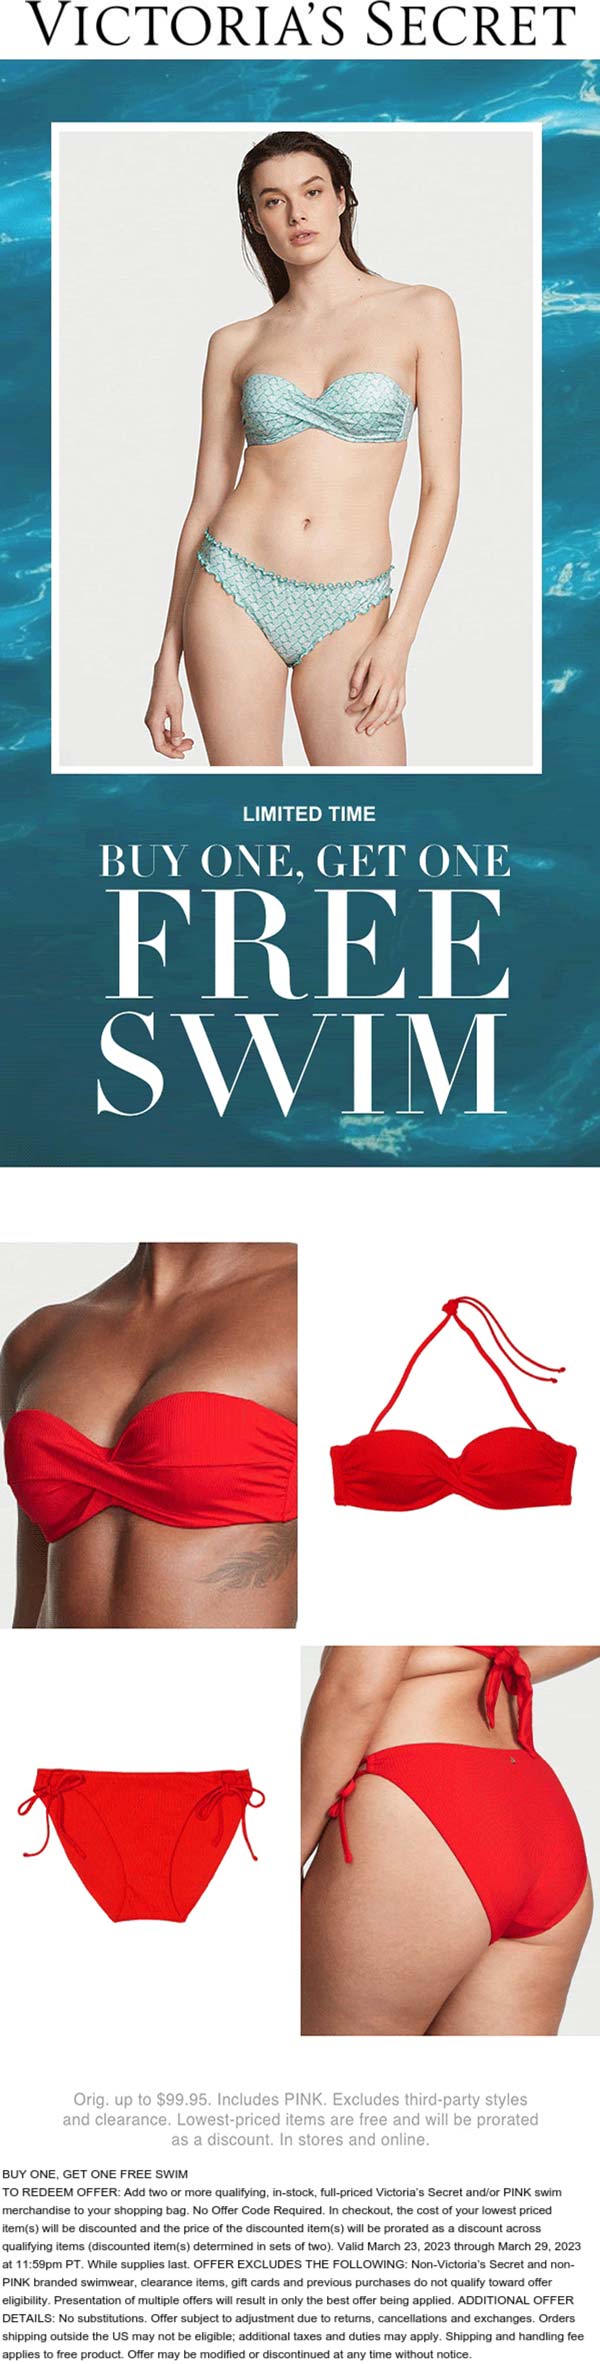 Victorias Secret stores Coupon  Second swimsuit free at Victorias Secret, ditto online #victoriassecret 